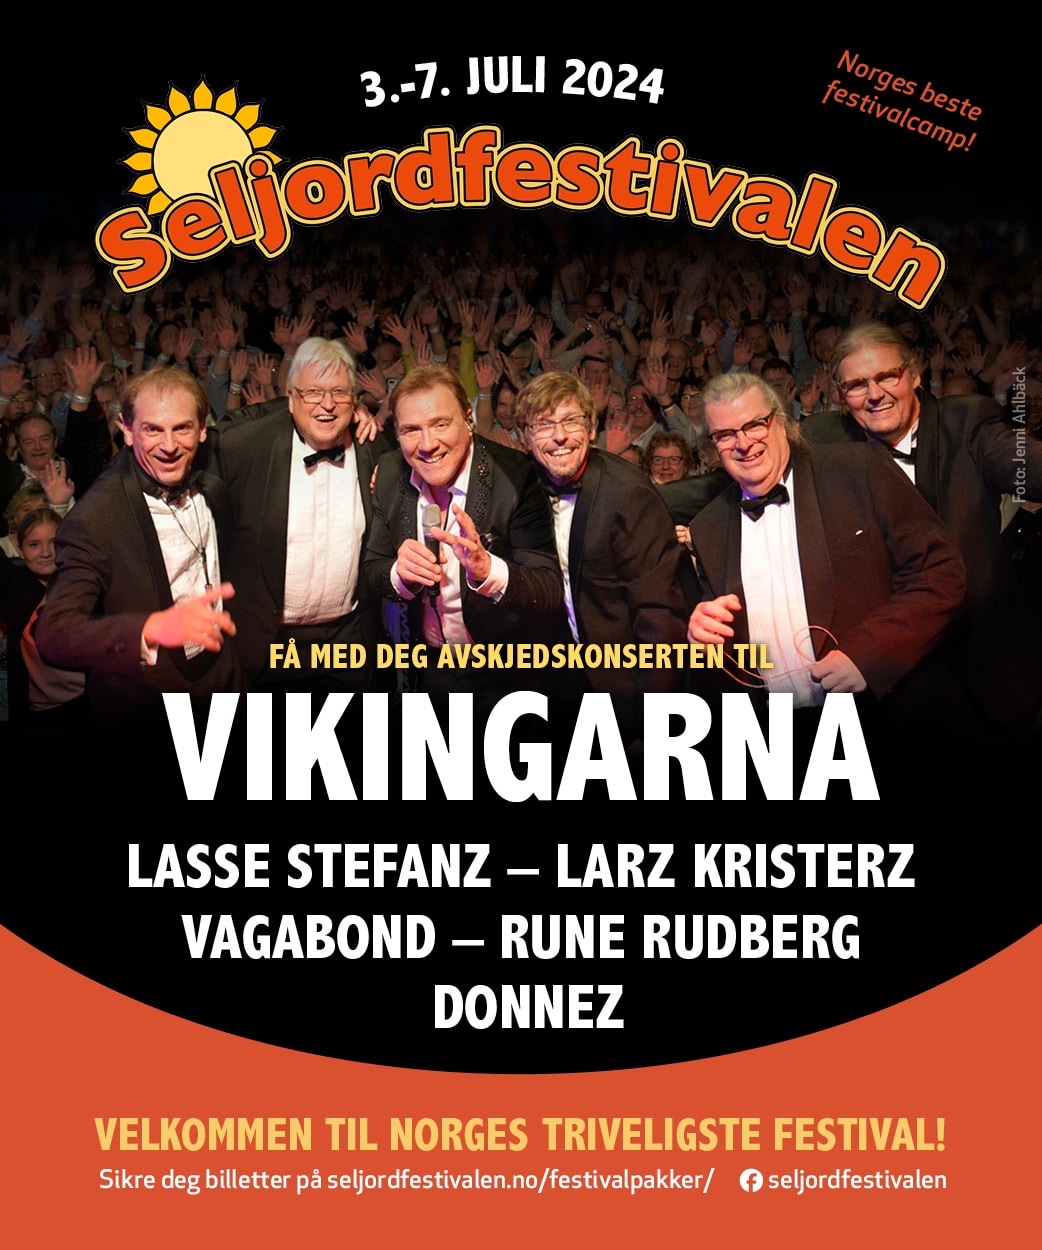 Seljordfestivalen plakat 2024 med bilde av Vikingarna.